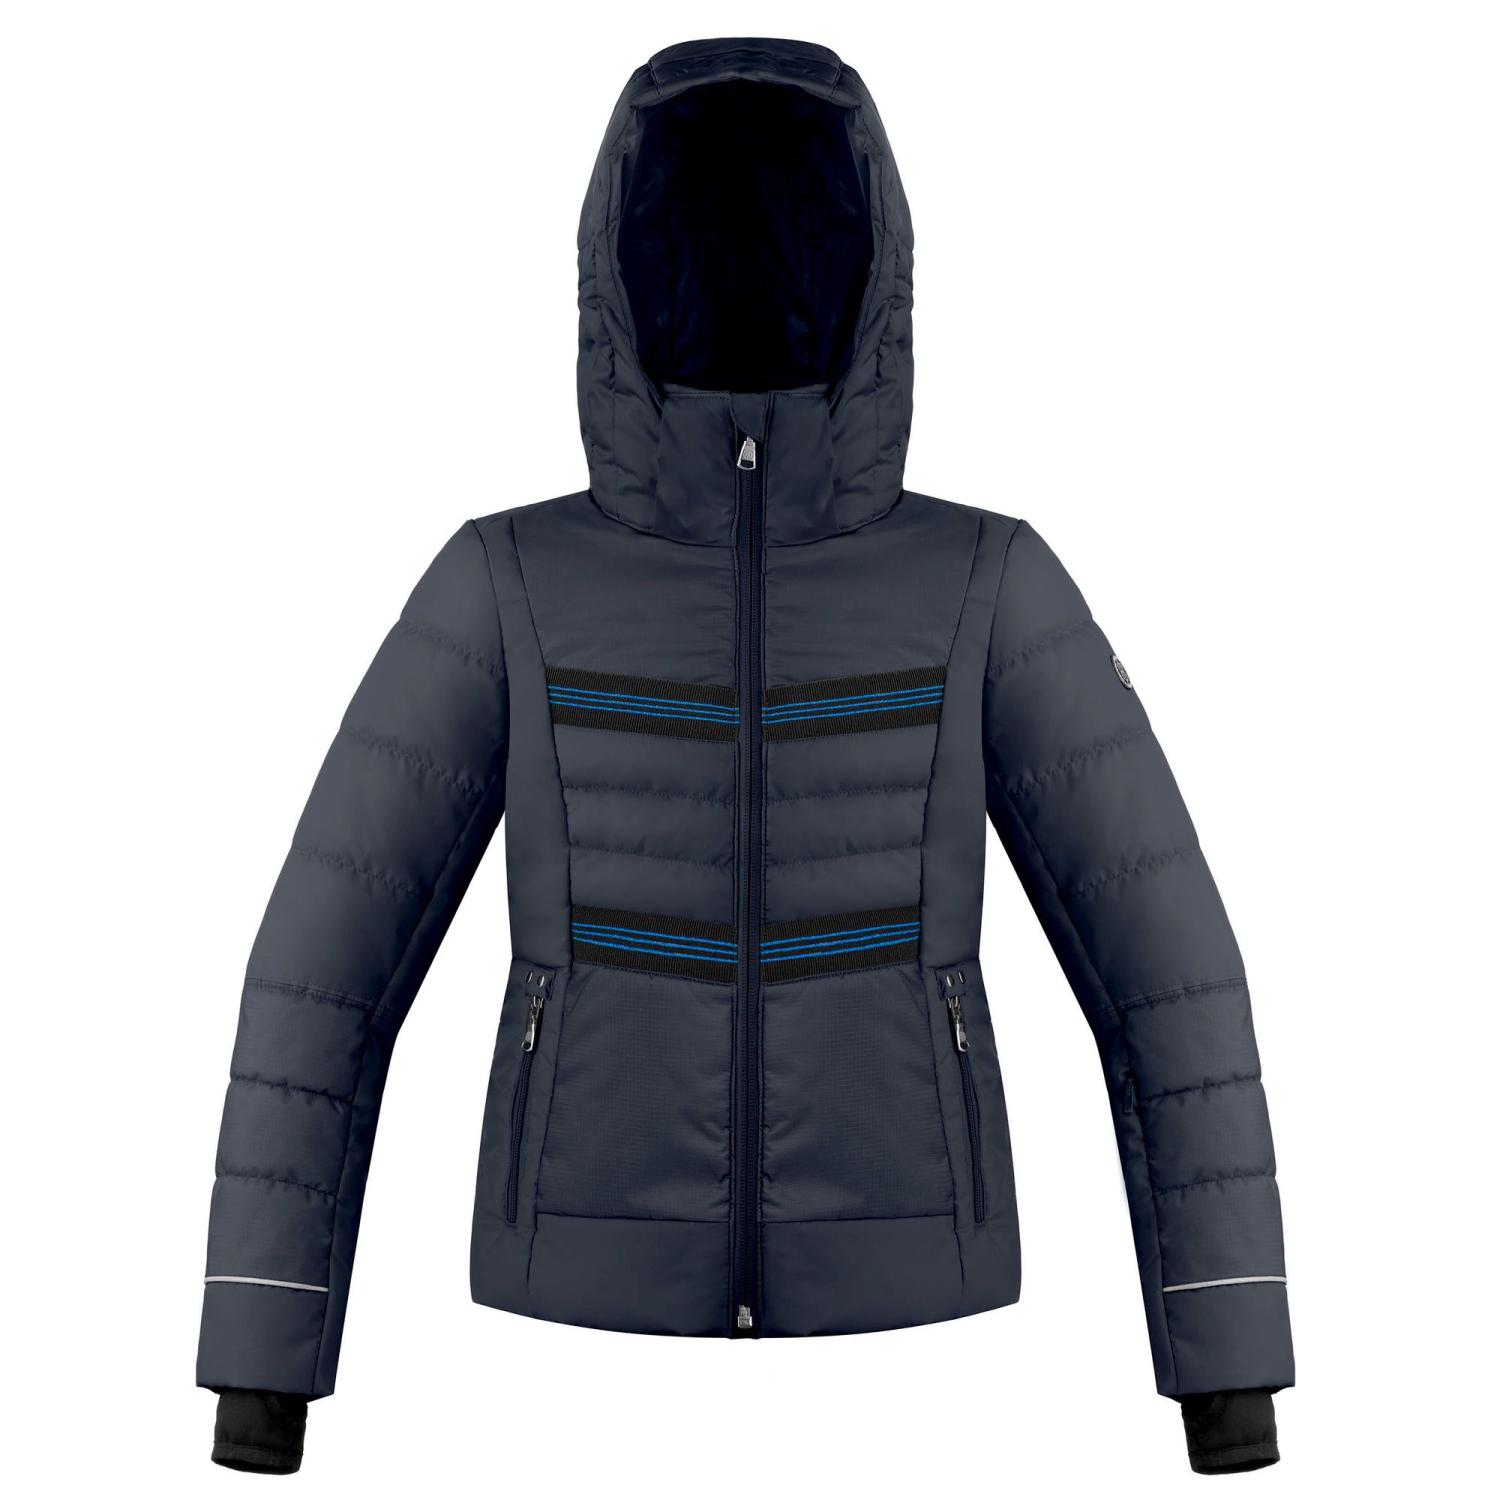 Куртка горнолыжная Poivre Blanc 20-21 Ski Jacket Jr Gothic Blue куртка горнолыжная poivre blanc 20 21 ski jacket mineral grey